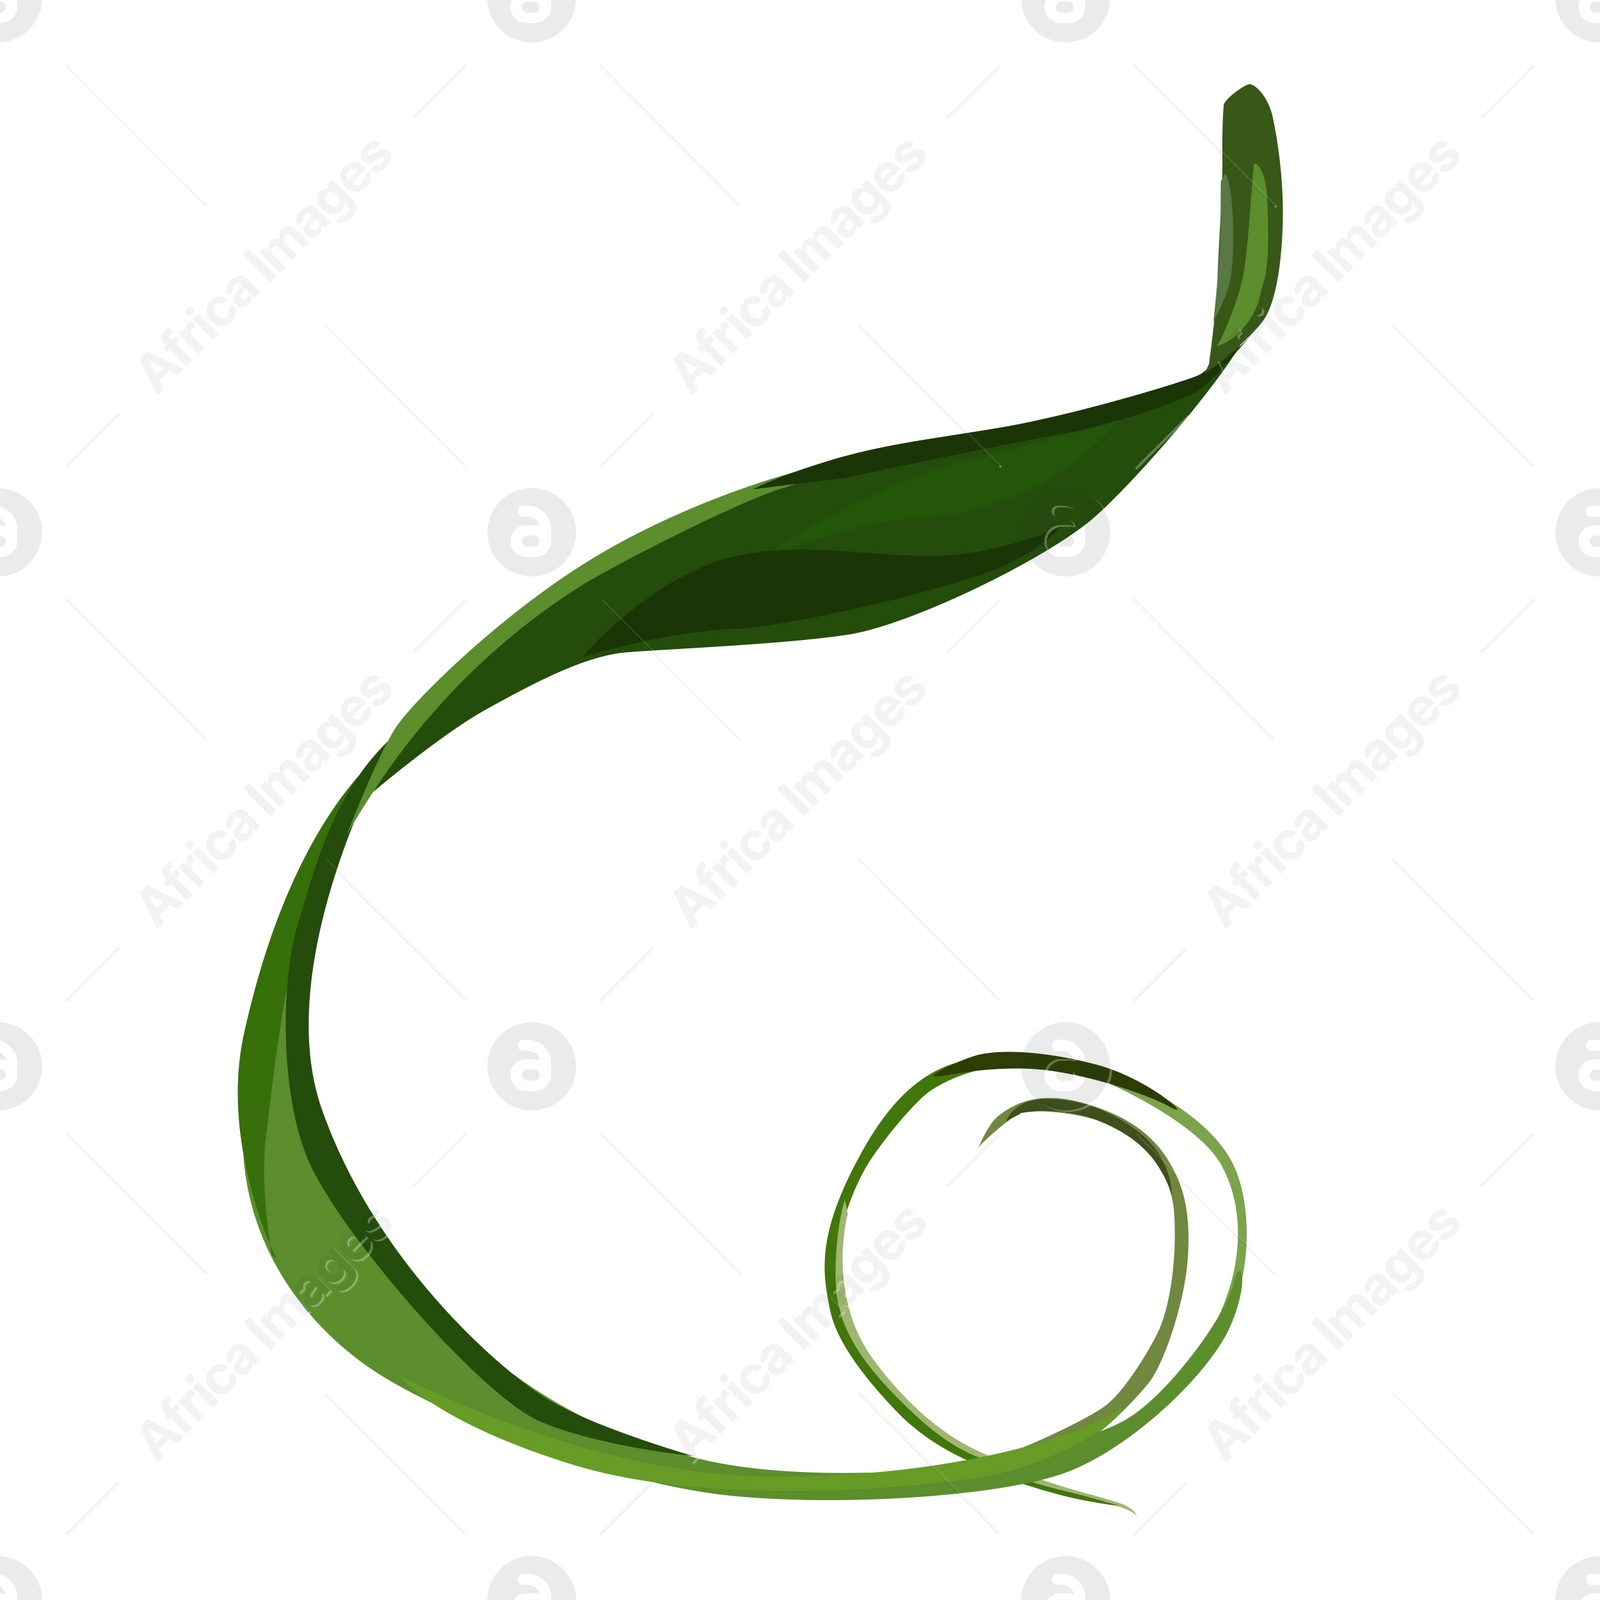 Illustration of Beautiful green leaf illustration on white background. Stylish design